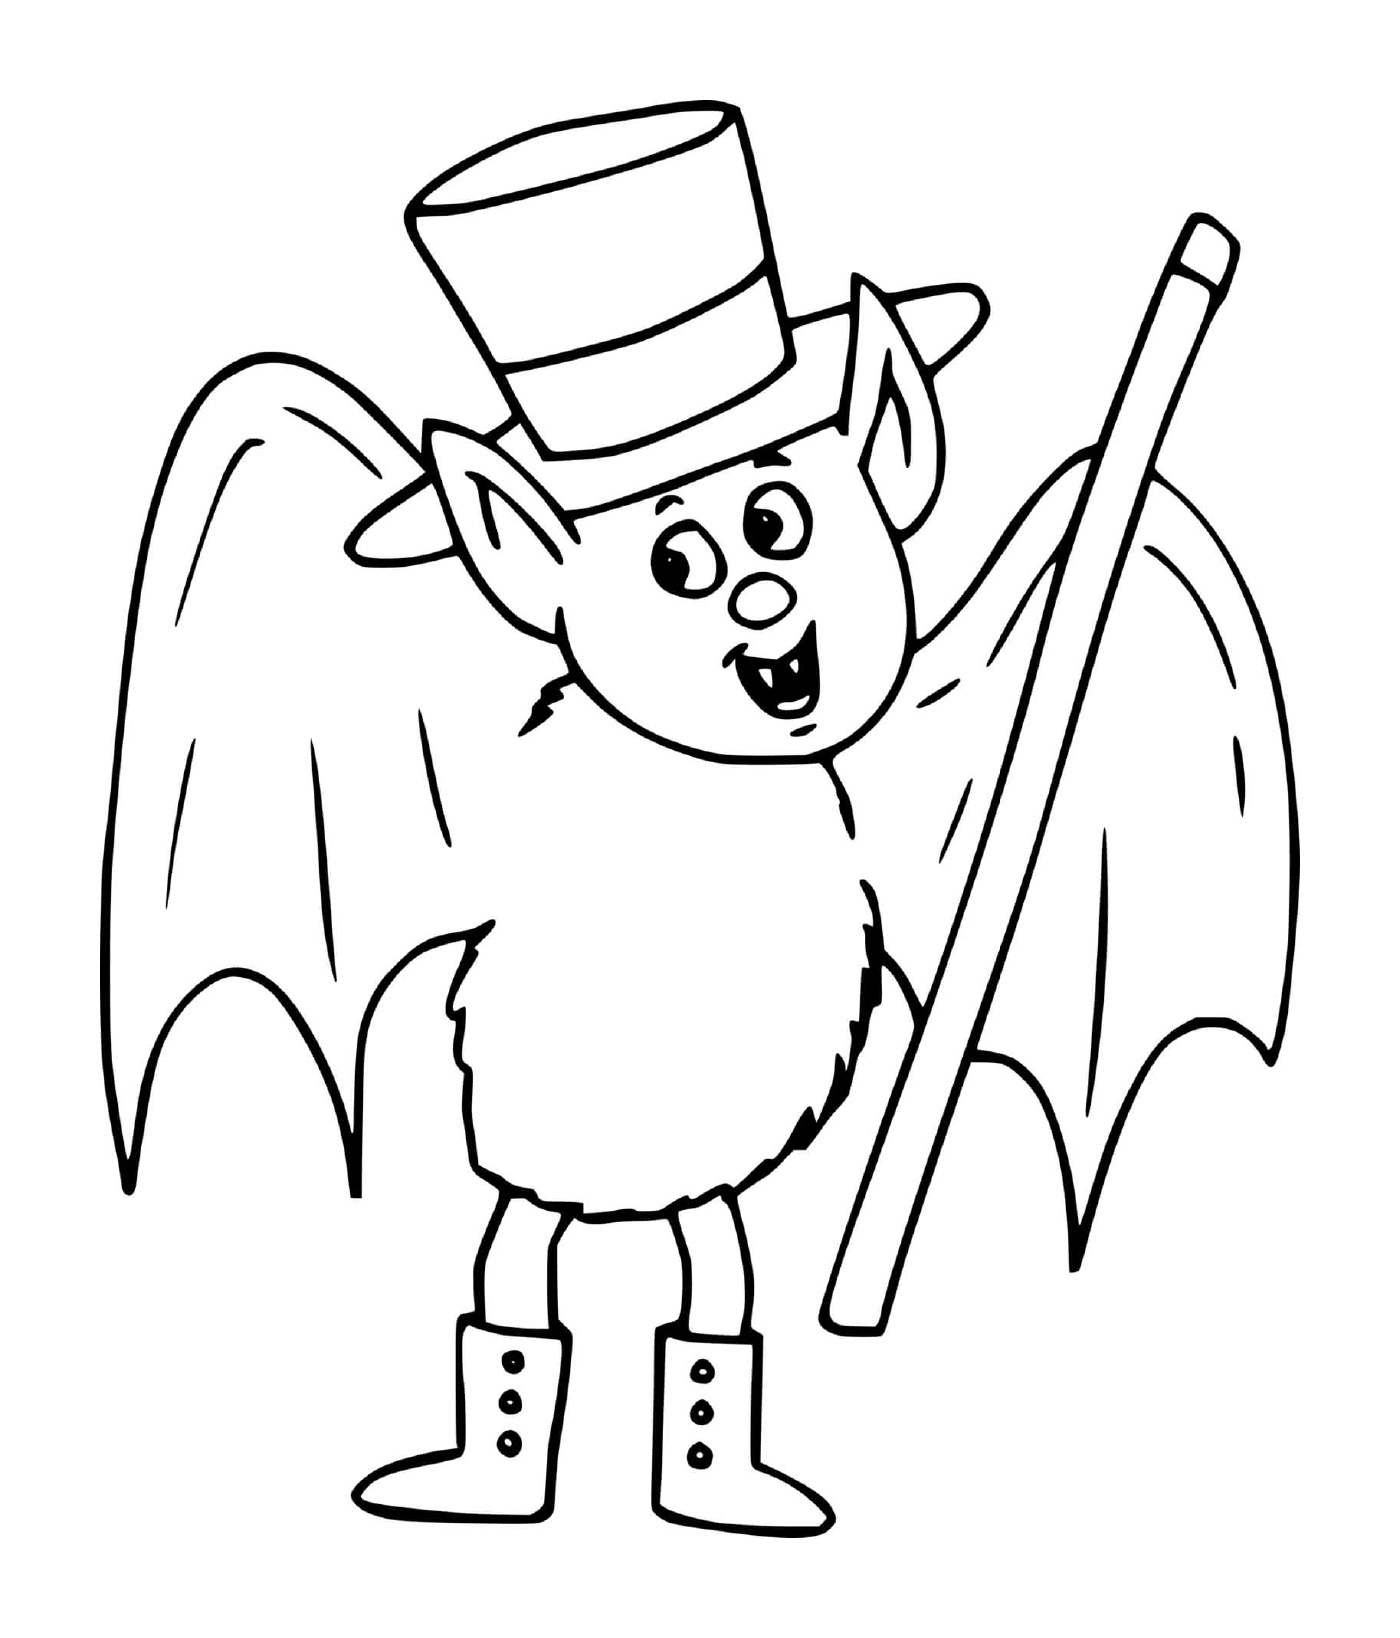  murciélago con sombrero de alta forma que parece un mago 